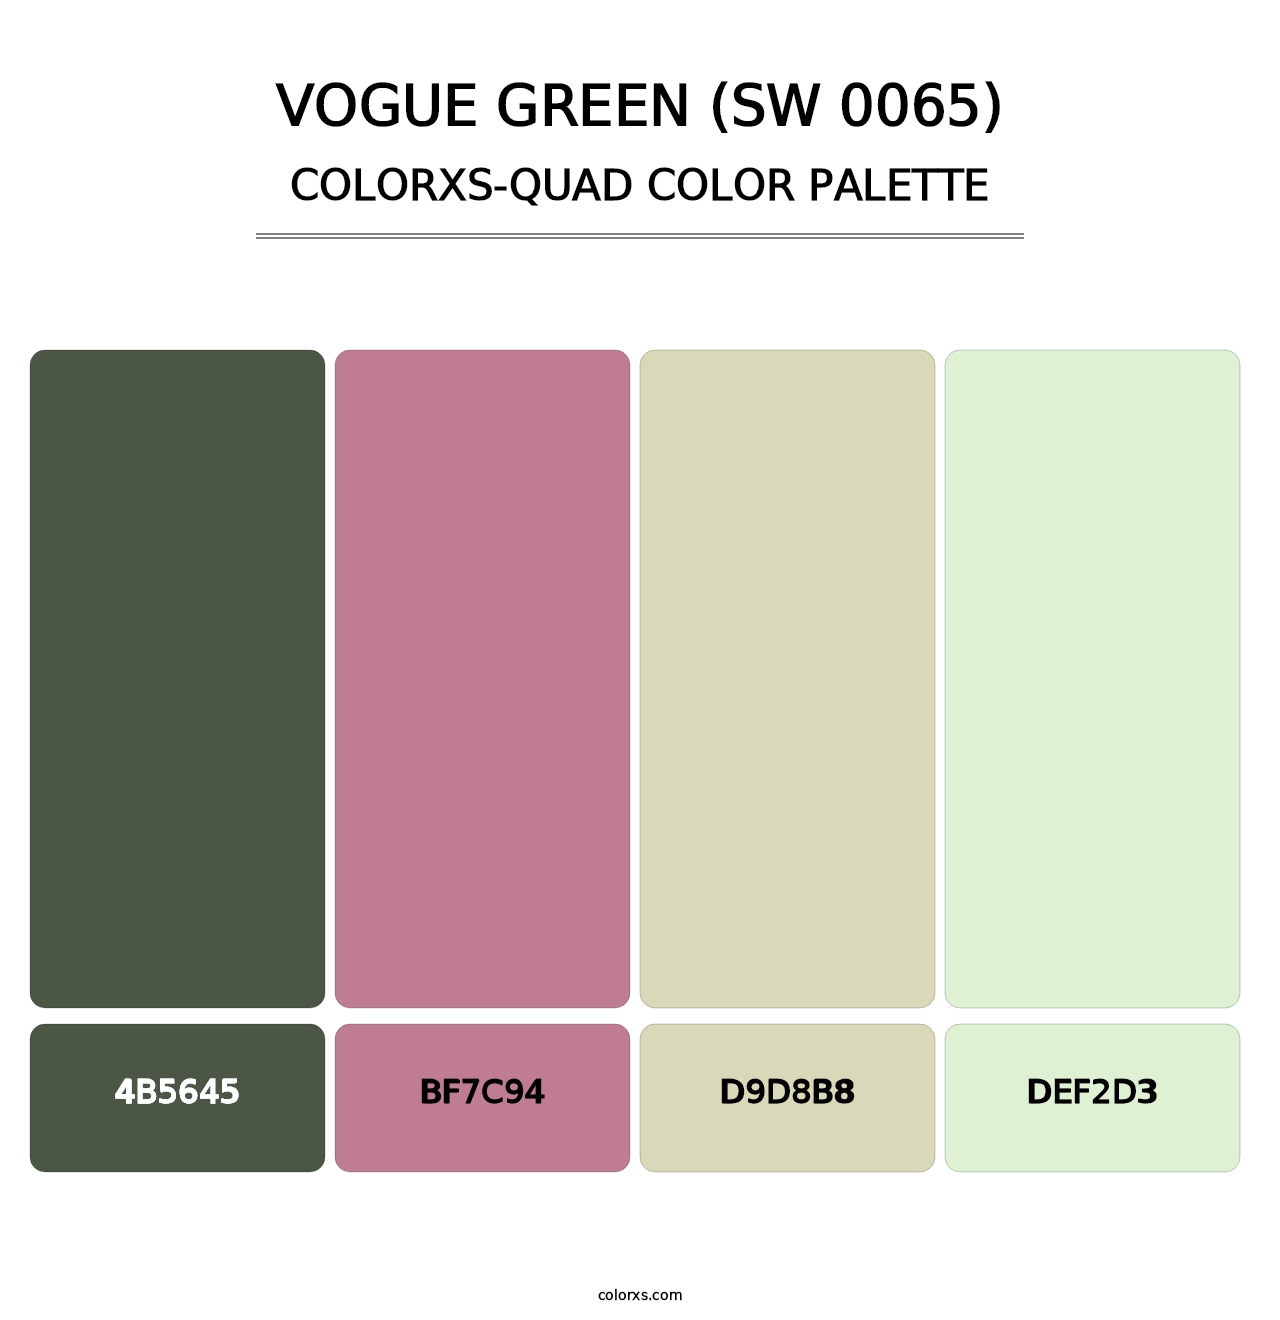 Vogue Green (SW 0065) - Colorxs Quad Palette